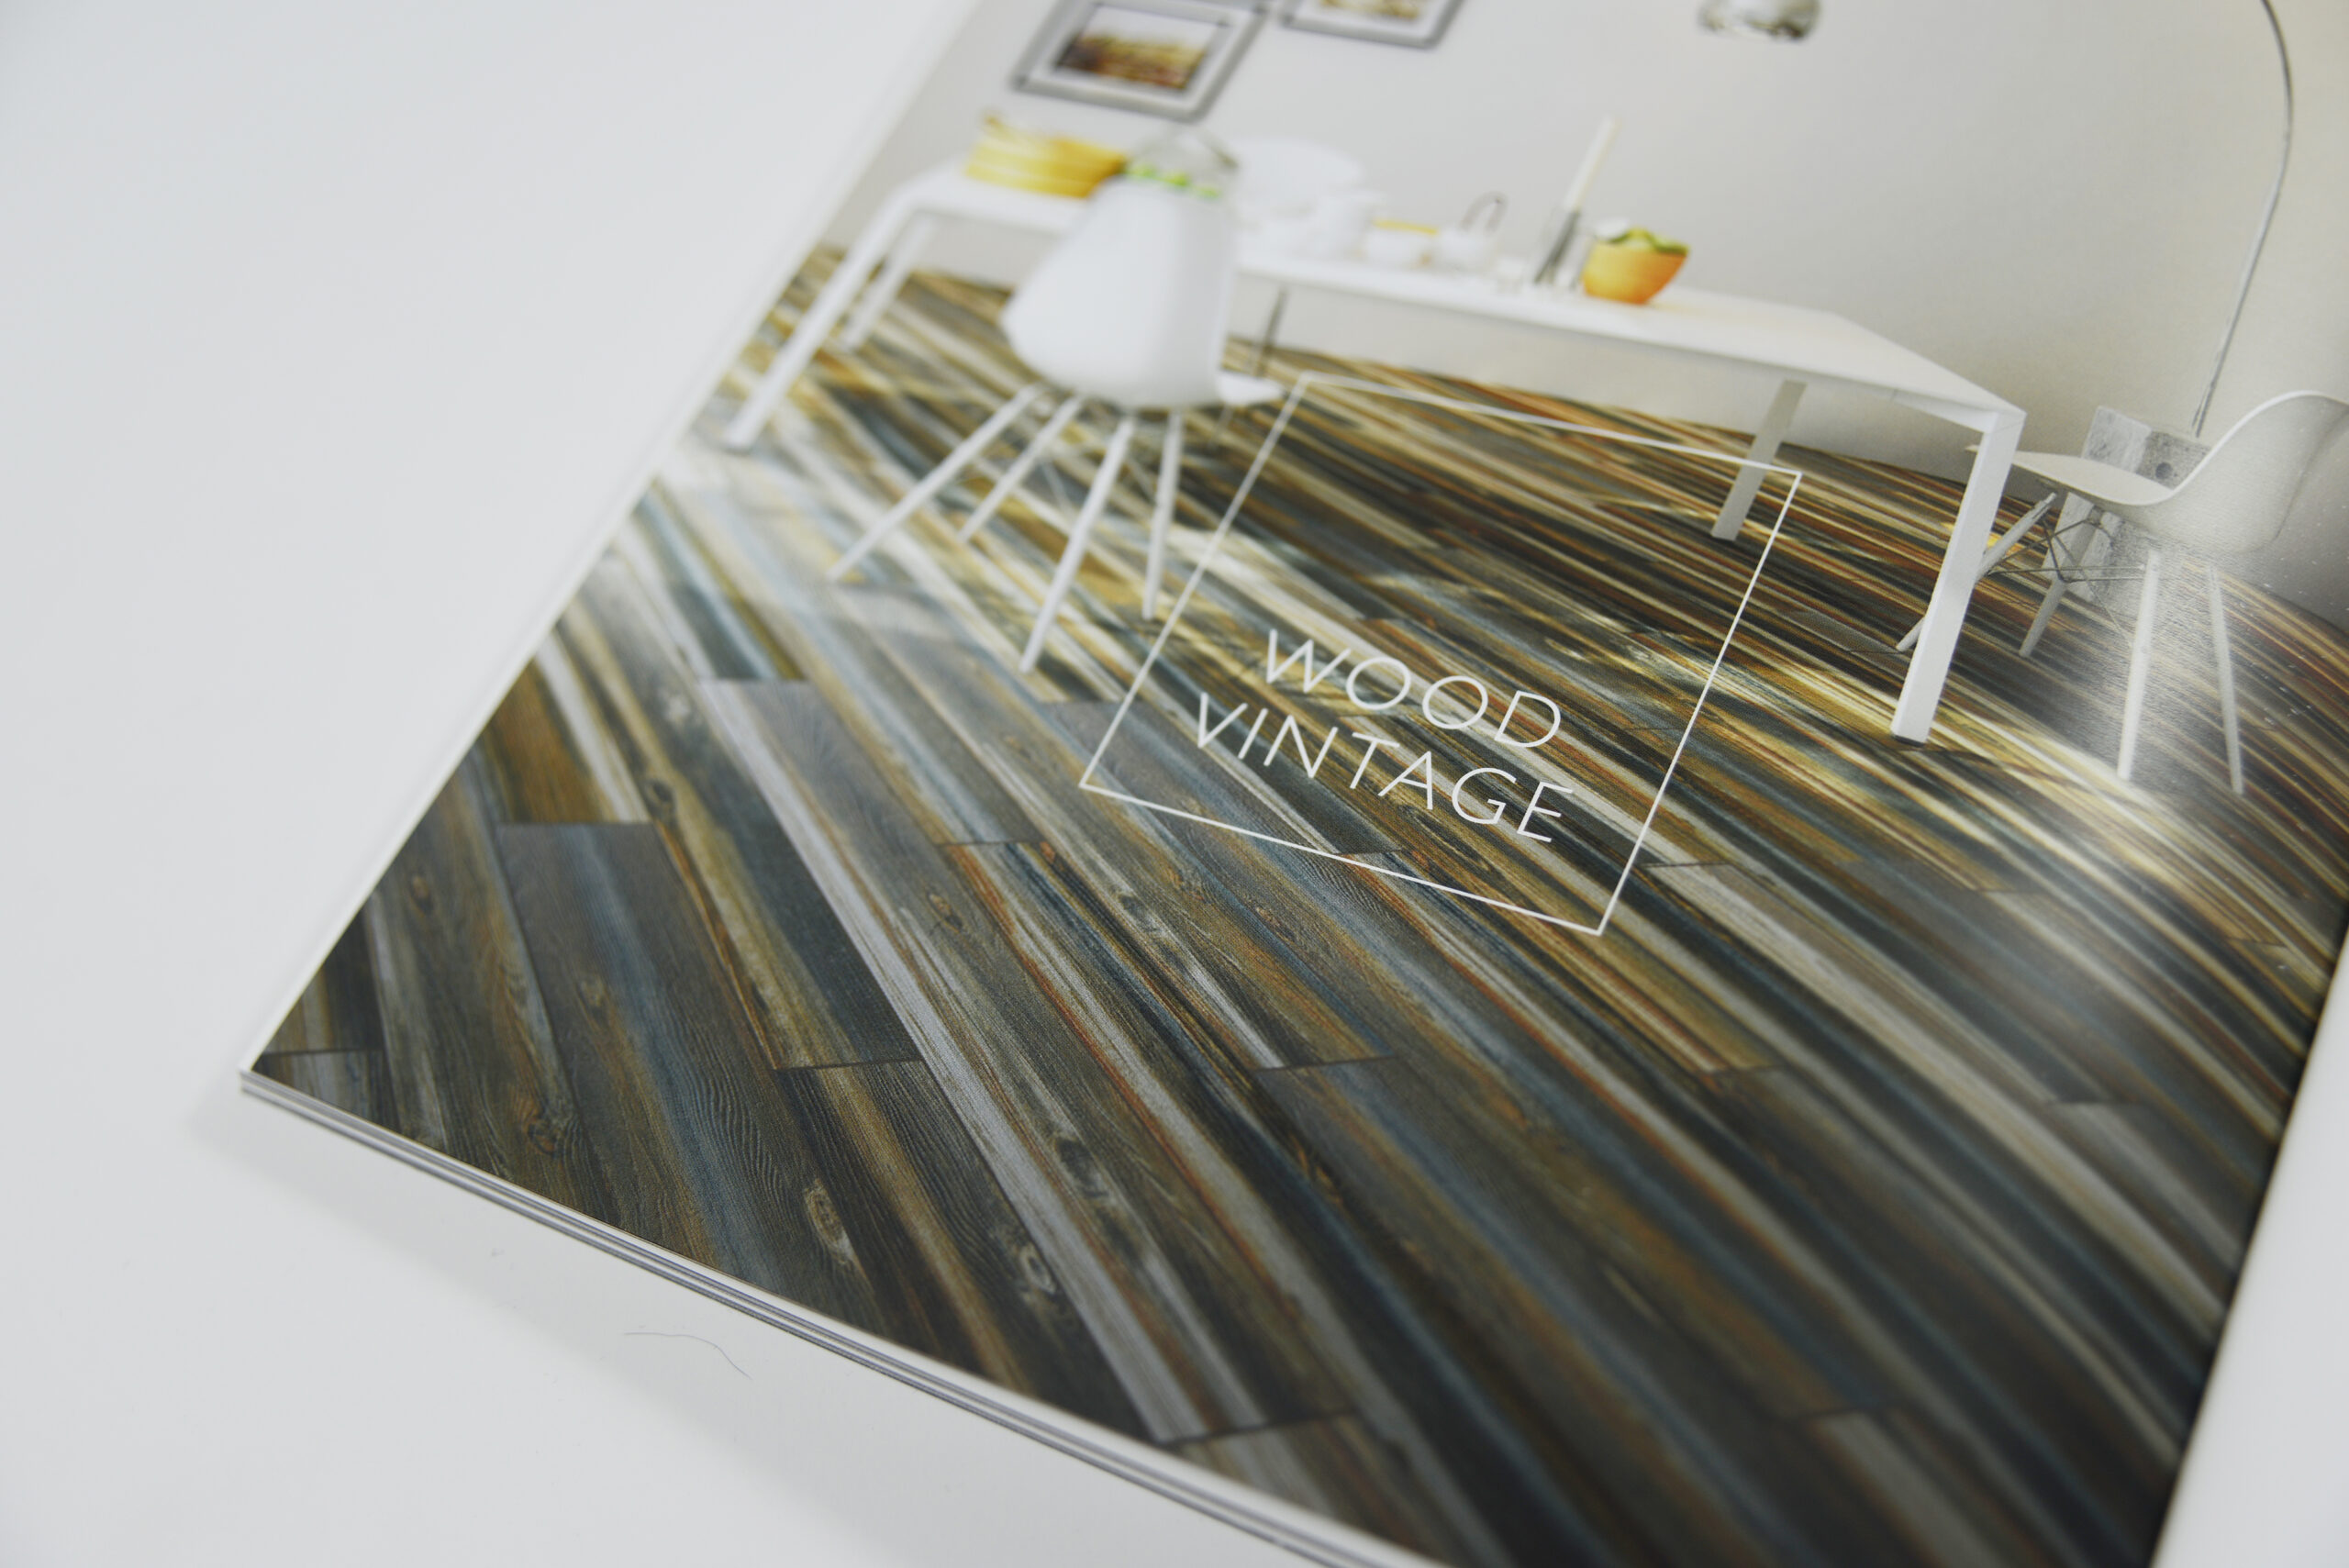 Katalog Design / Editorial Design - RAK Ceramics Colletion 2014